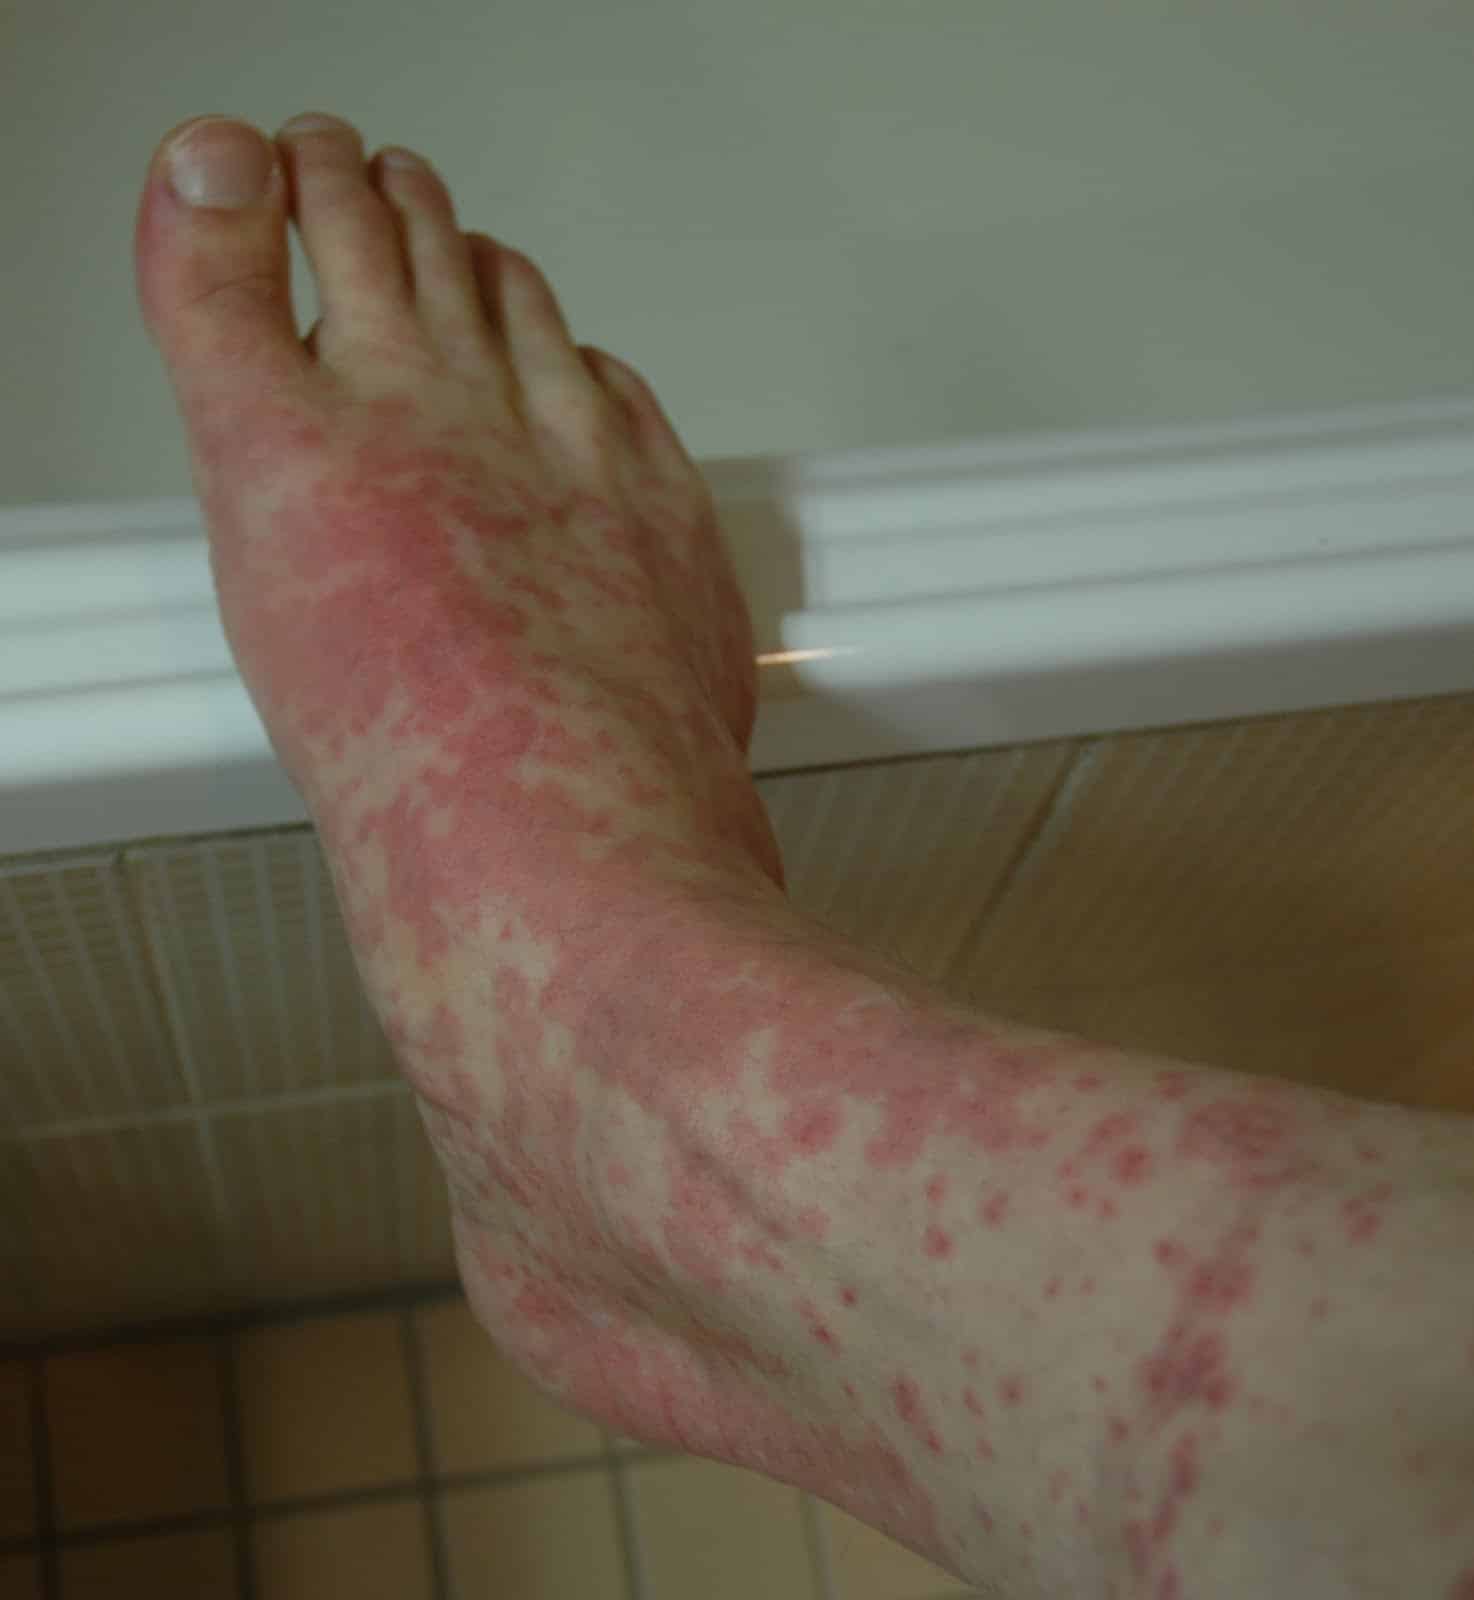 my atripla rash experience: day 11